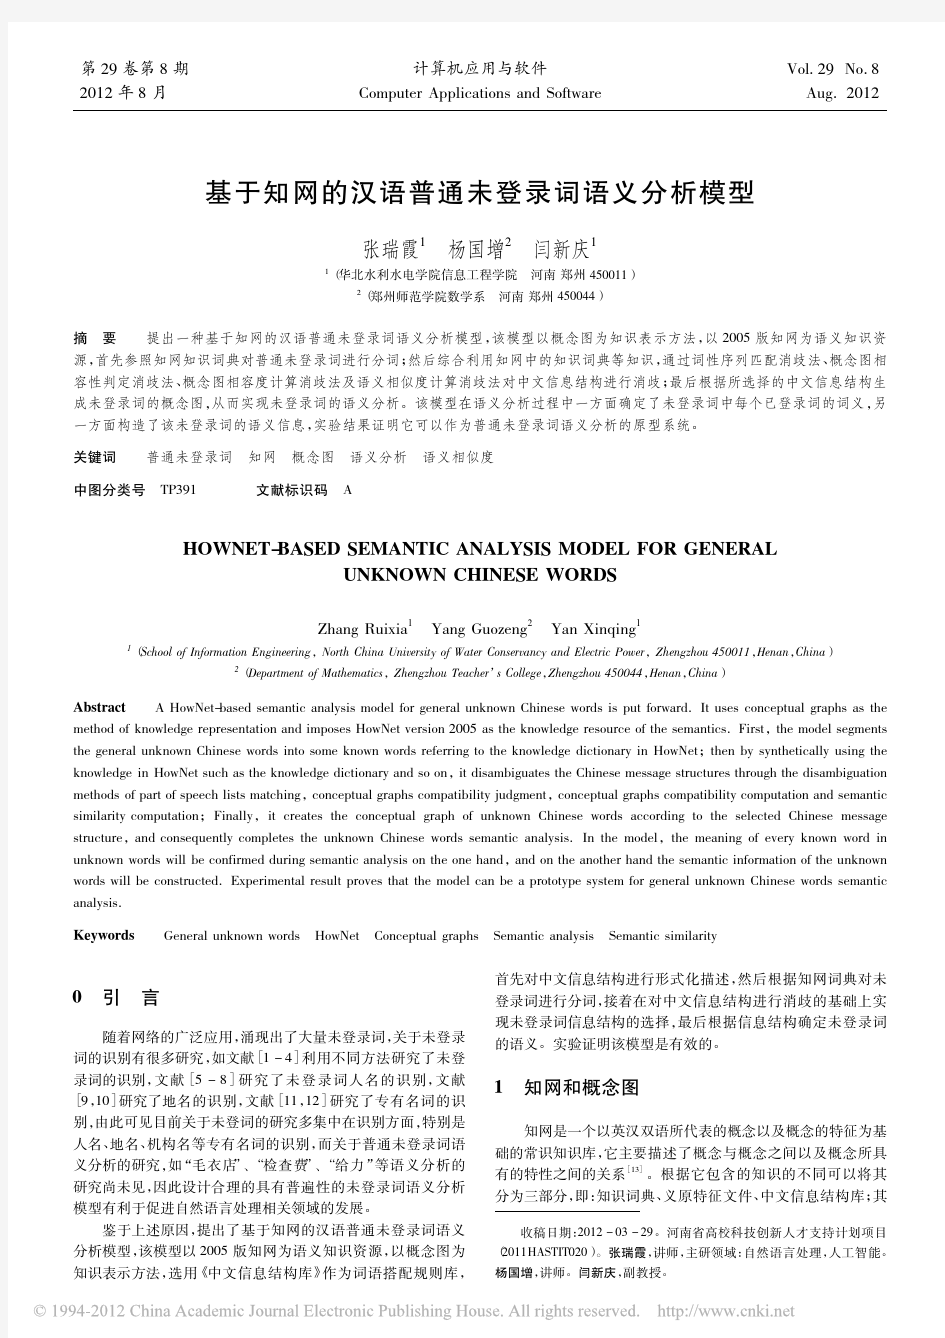 基于知网的汉语普通未登录词语义分析模型